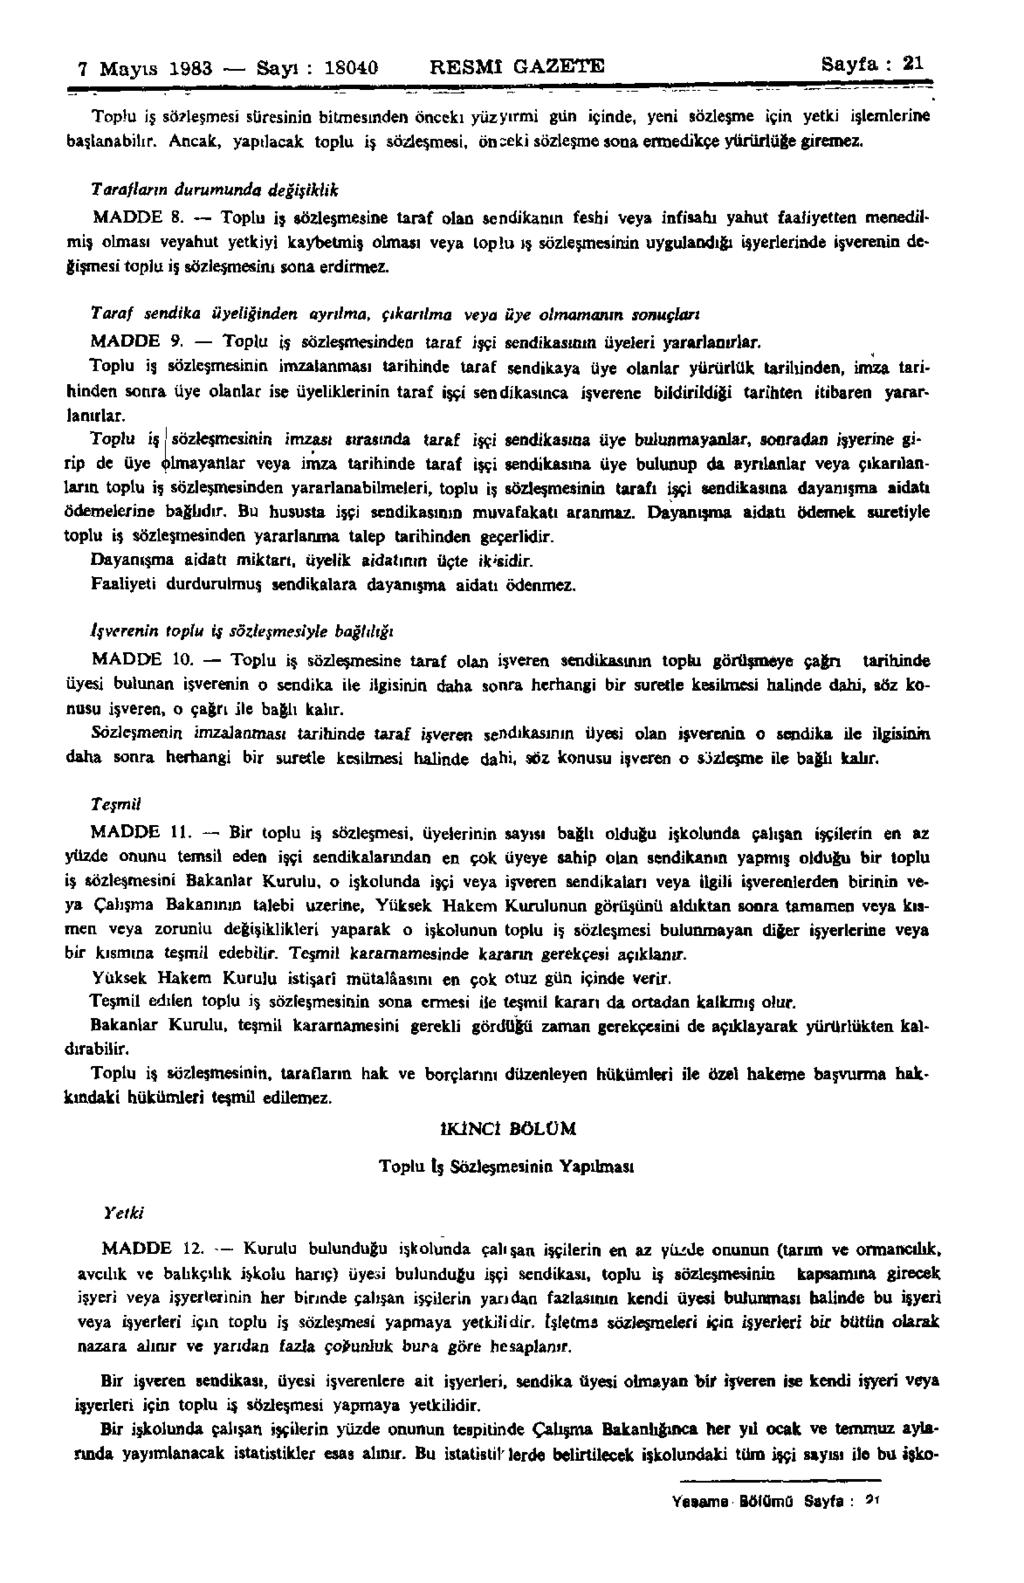 7 Mayıs 1983 Sayı : 18040 RESMİ GAZETE Sayfa : 21 Toplu iş sözleşmesi süresinin bitmesinden önceki yüz yirmi gün içinde, yeni sözleşme için yetki işlemlerine başlanabilir.